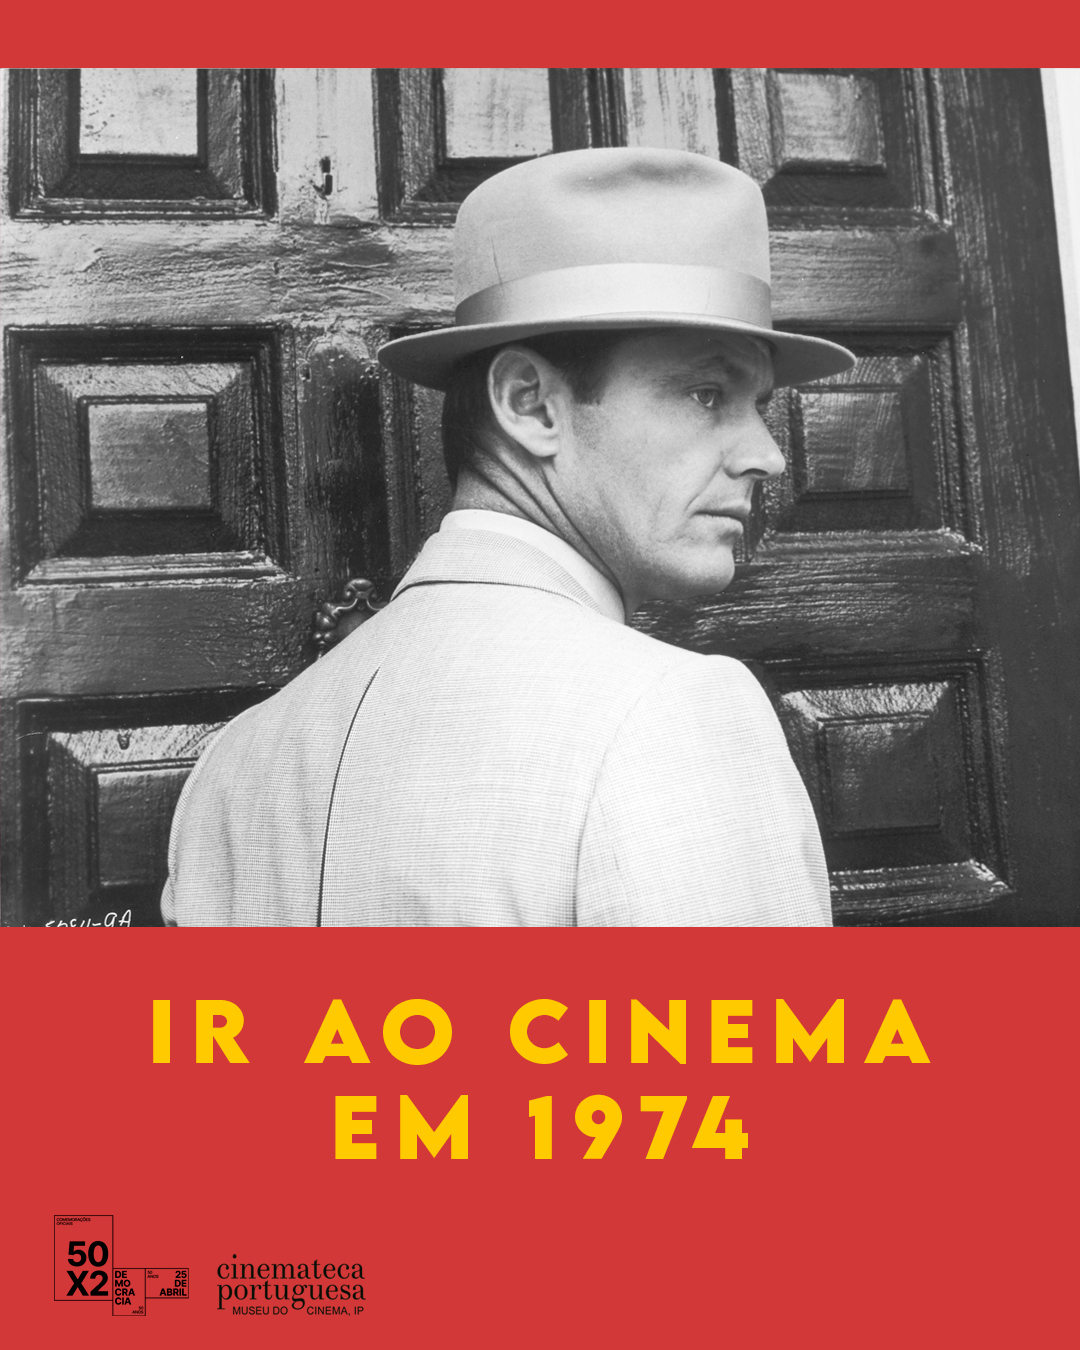 Capa Oficial do Evento Ir ao Cinema em 1974